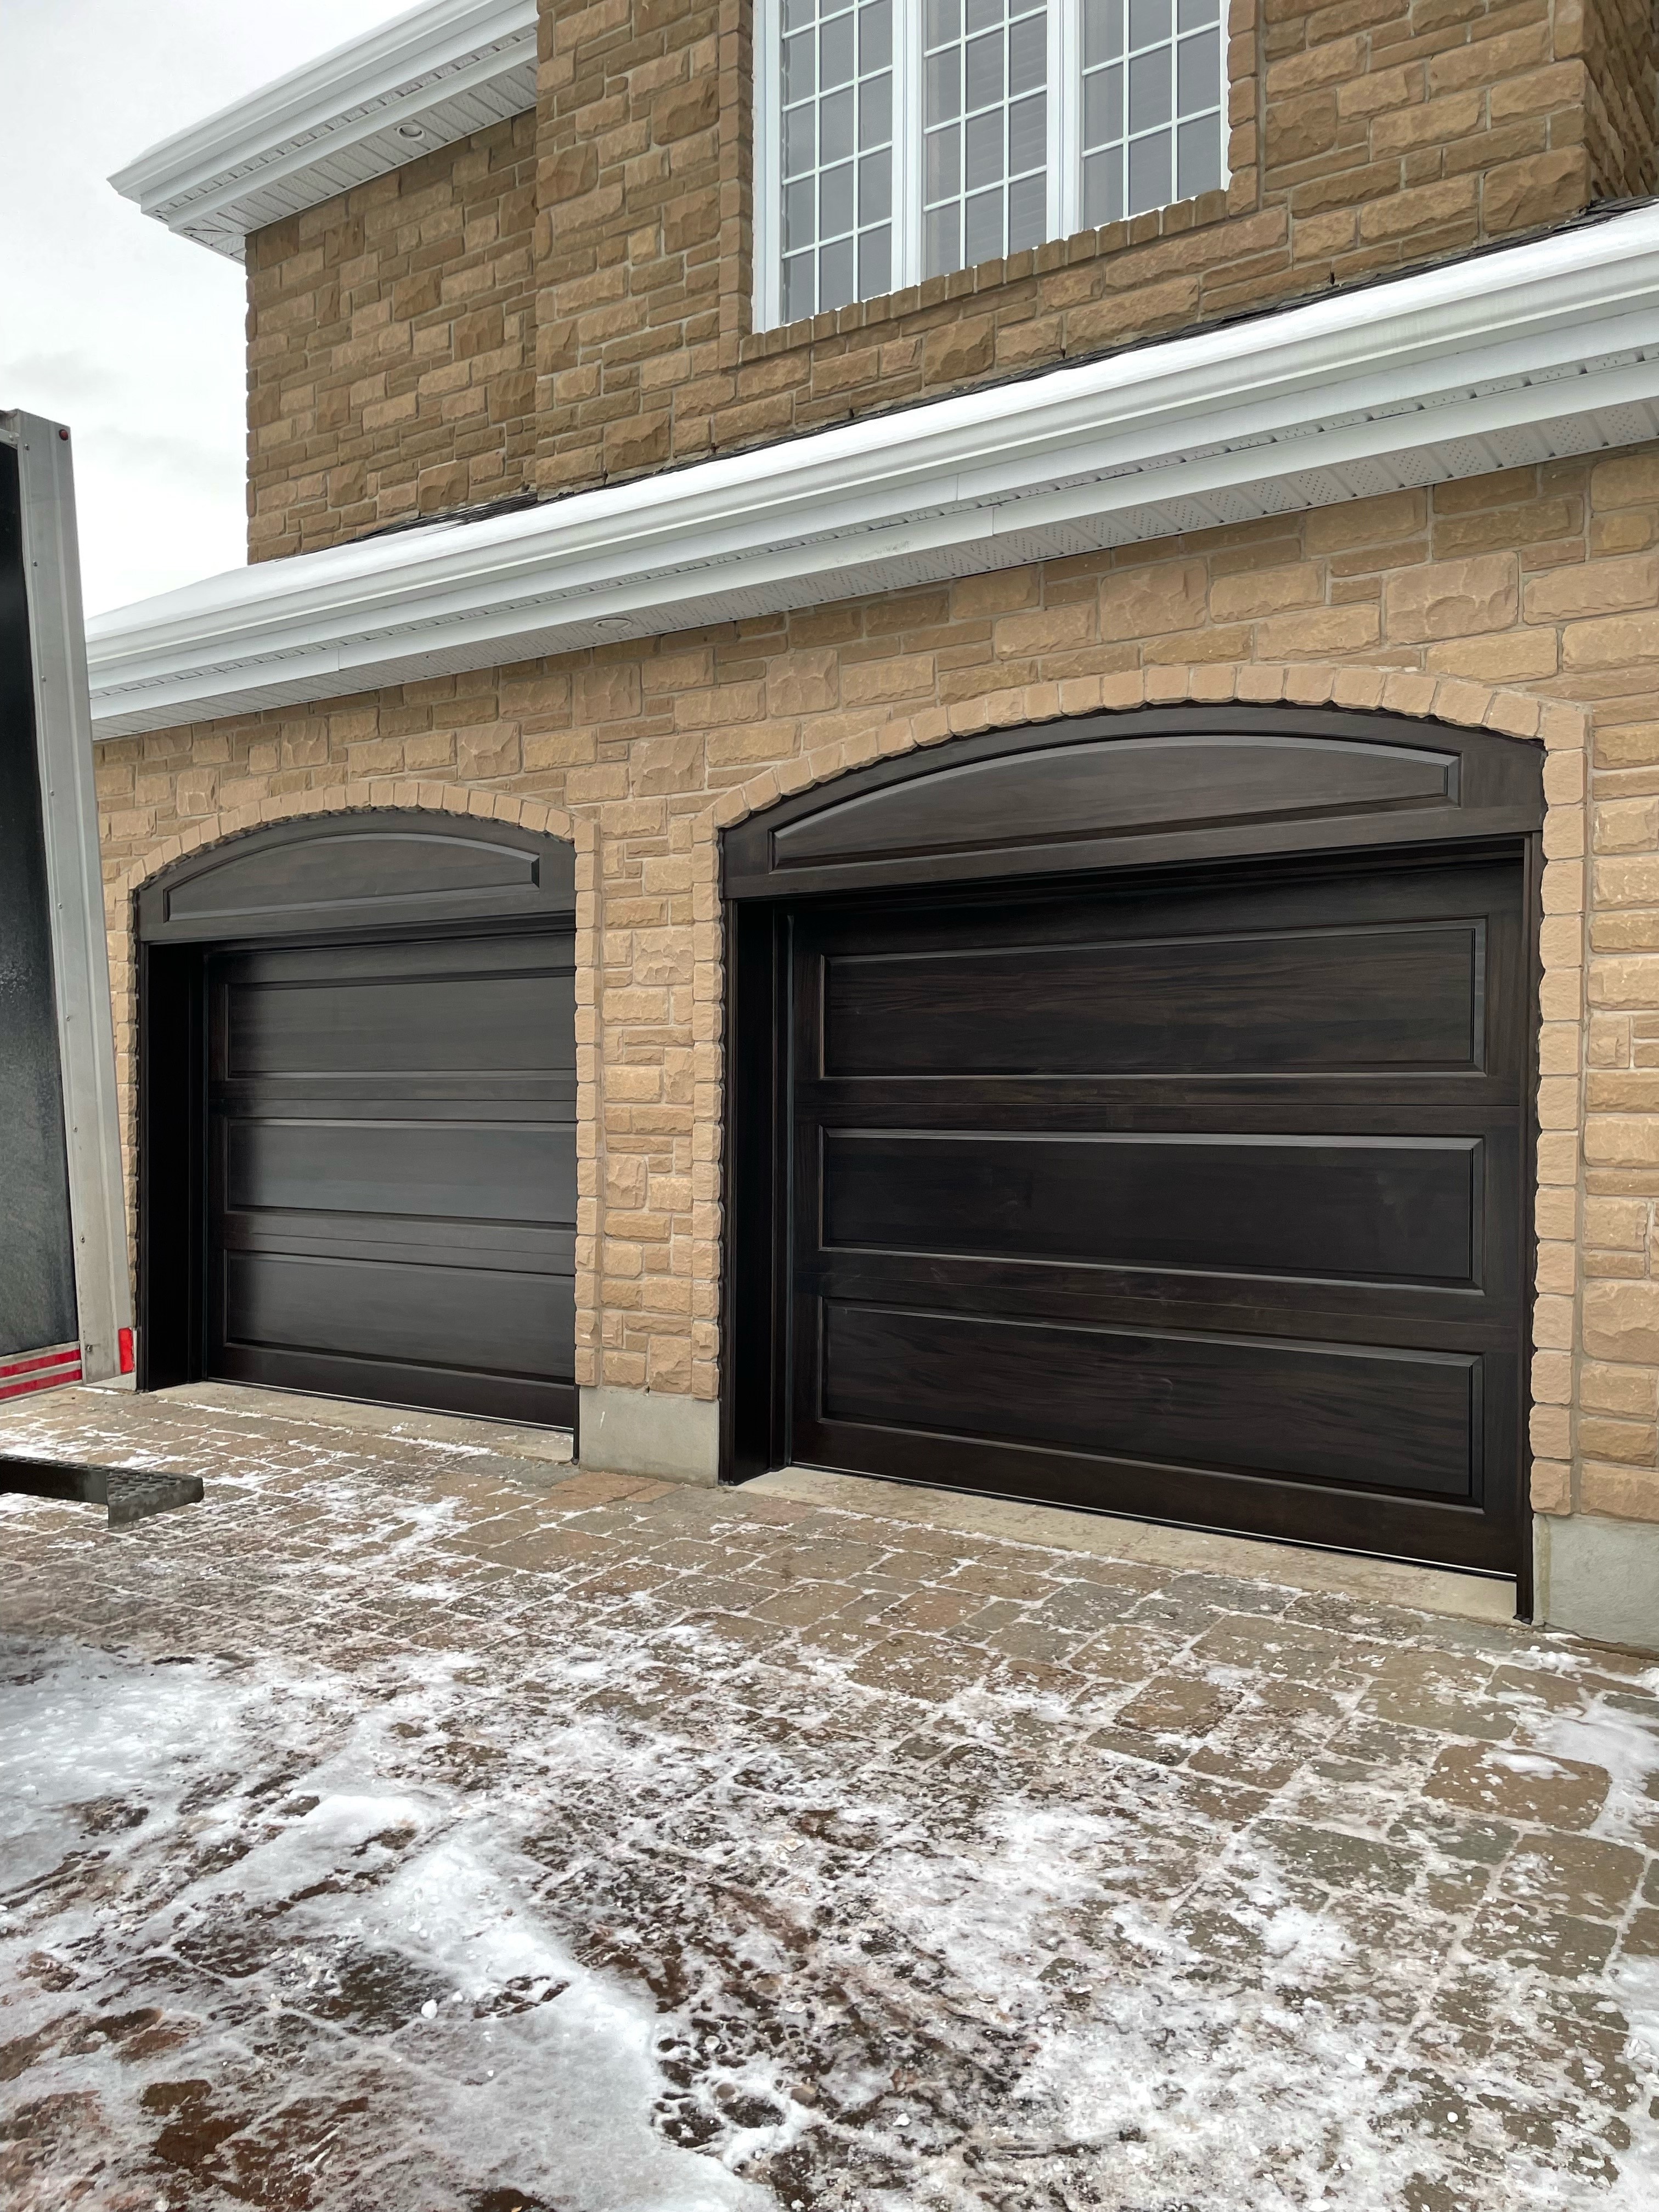 Modern-style double garage door